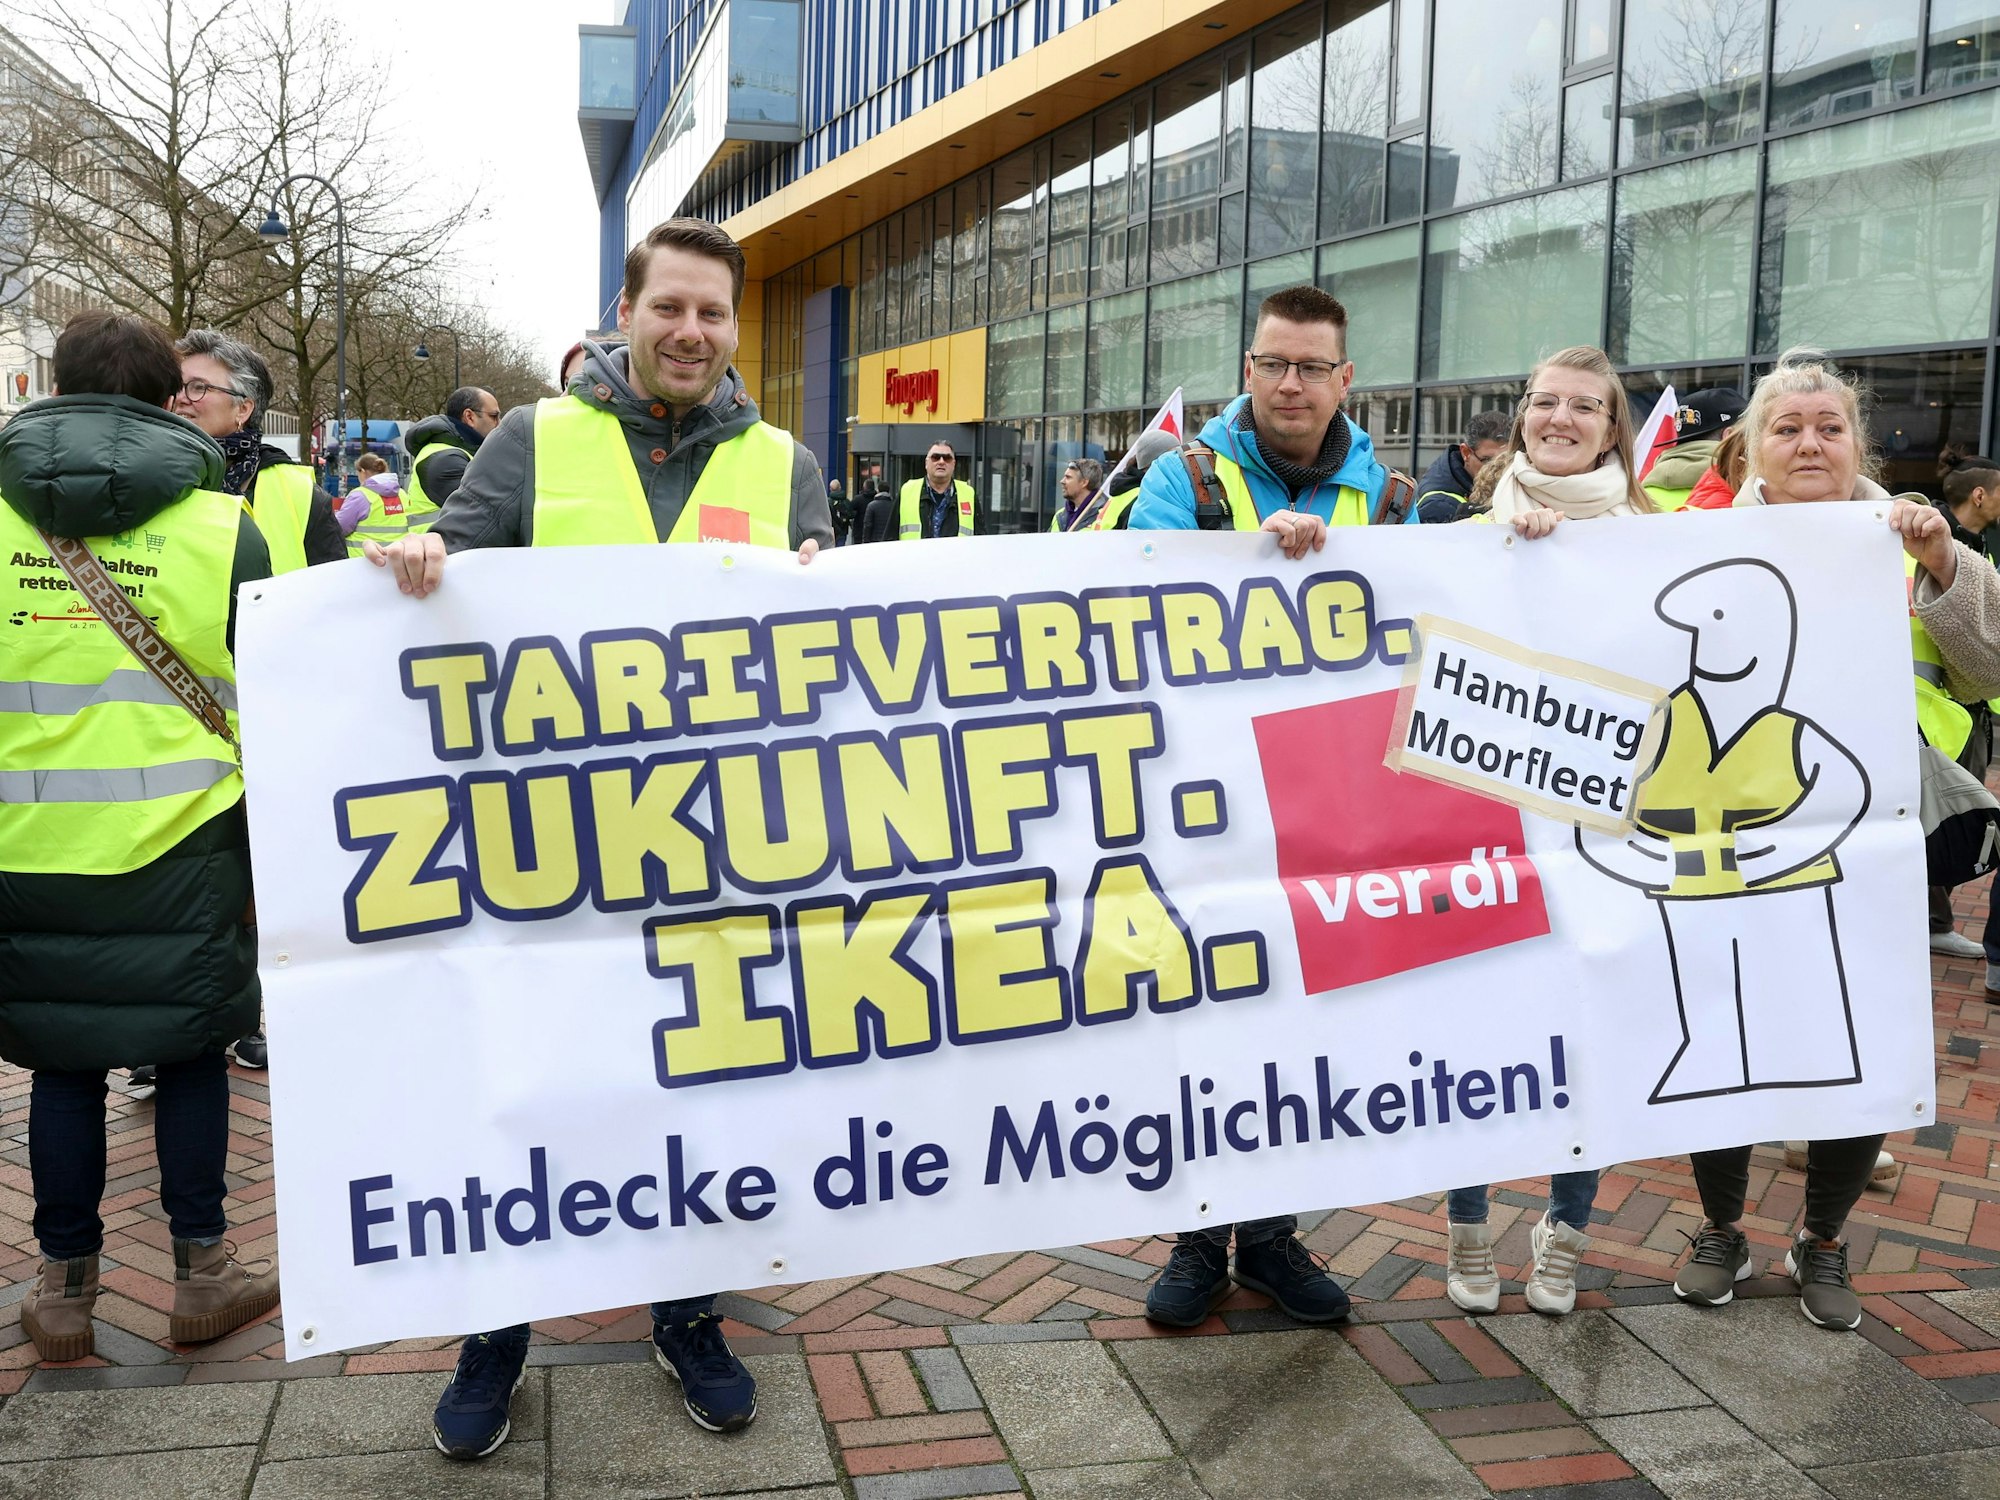 Streikende Ikea-Mitarbeiter stehen bei einer Kundgebung vor einer Ikea-Filiale in Hamburg-Altona und halten ein Transparent mit der Aufschrift „Tarifvertrag. Zukunft. Ikea. Endecke die Möglichkeiten!“